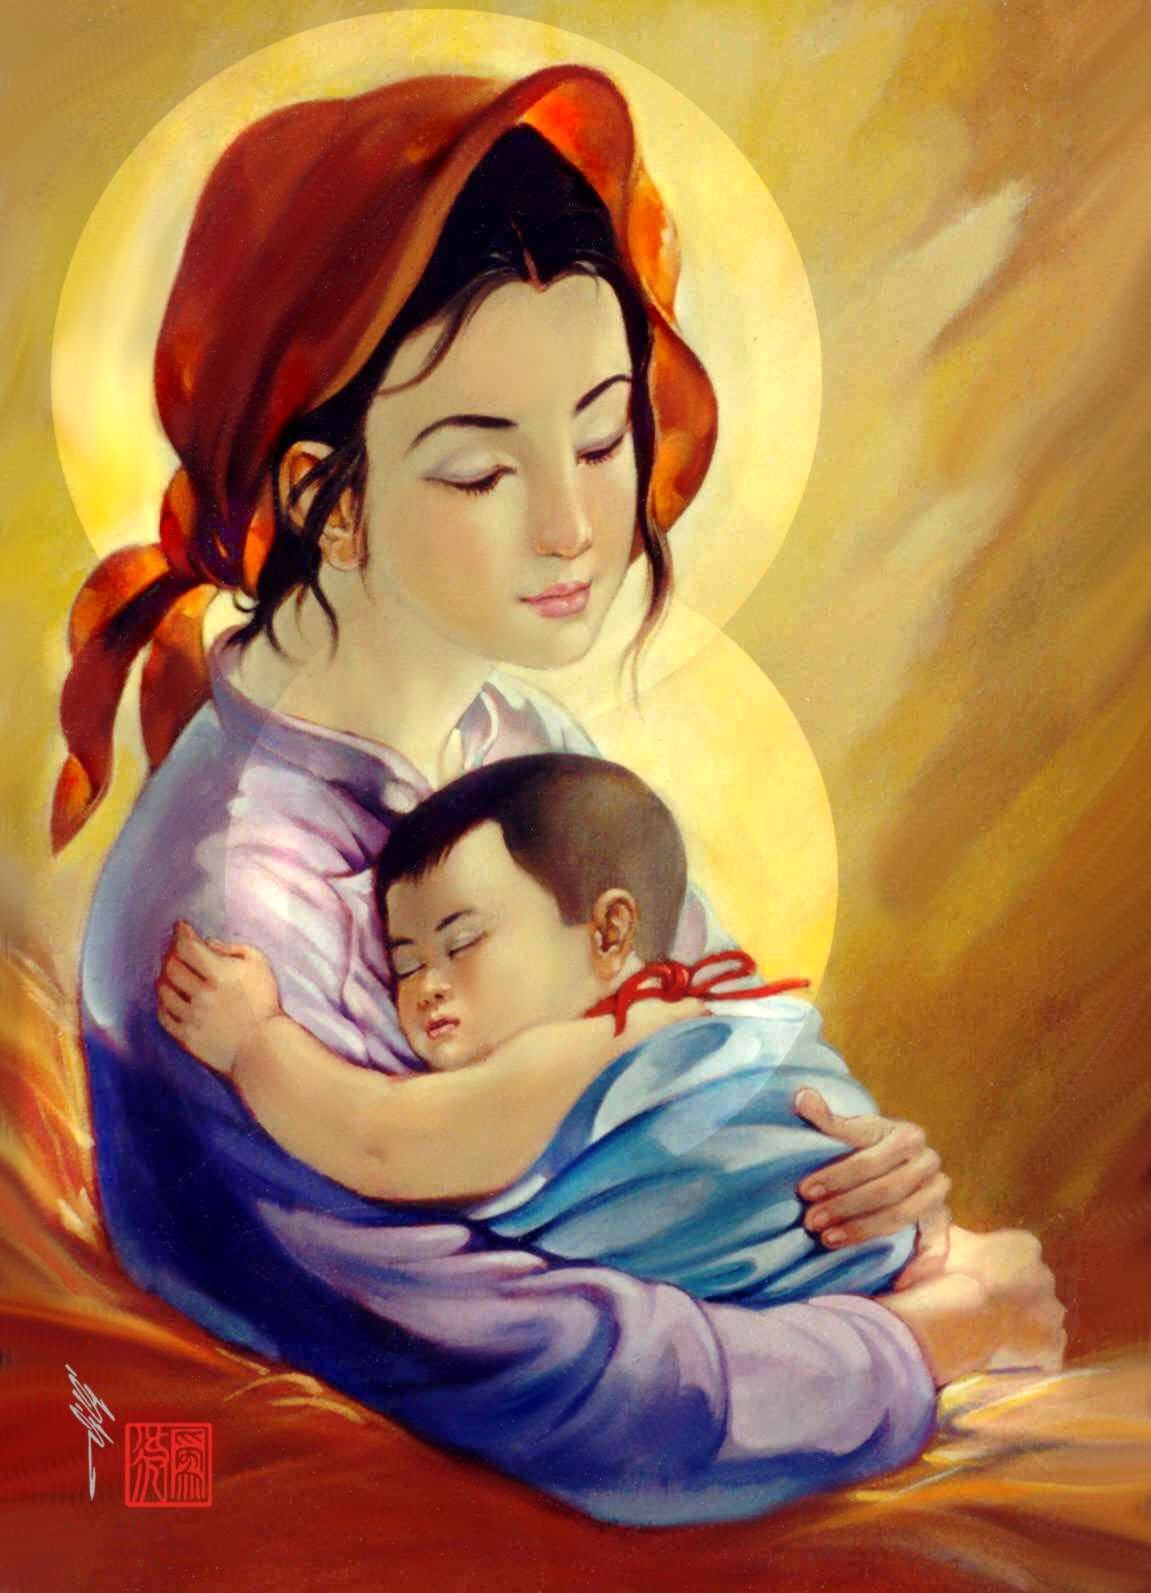 Tranh người mẹ duyên dáng và dịu dàng